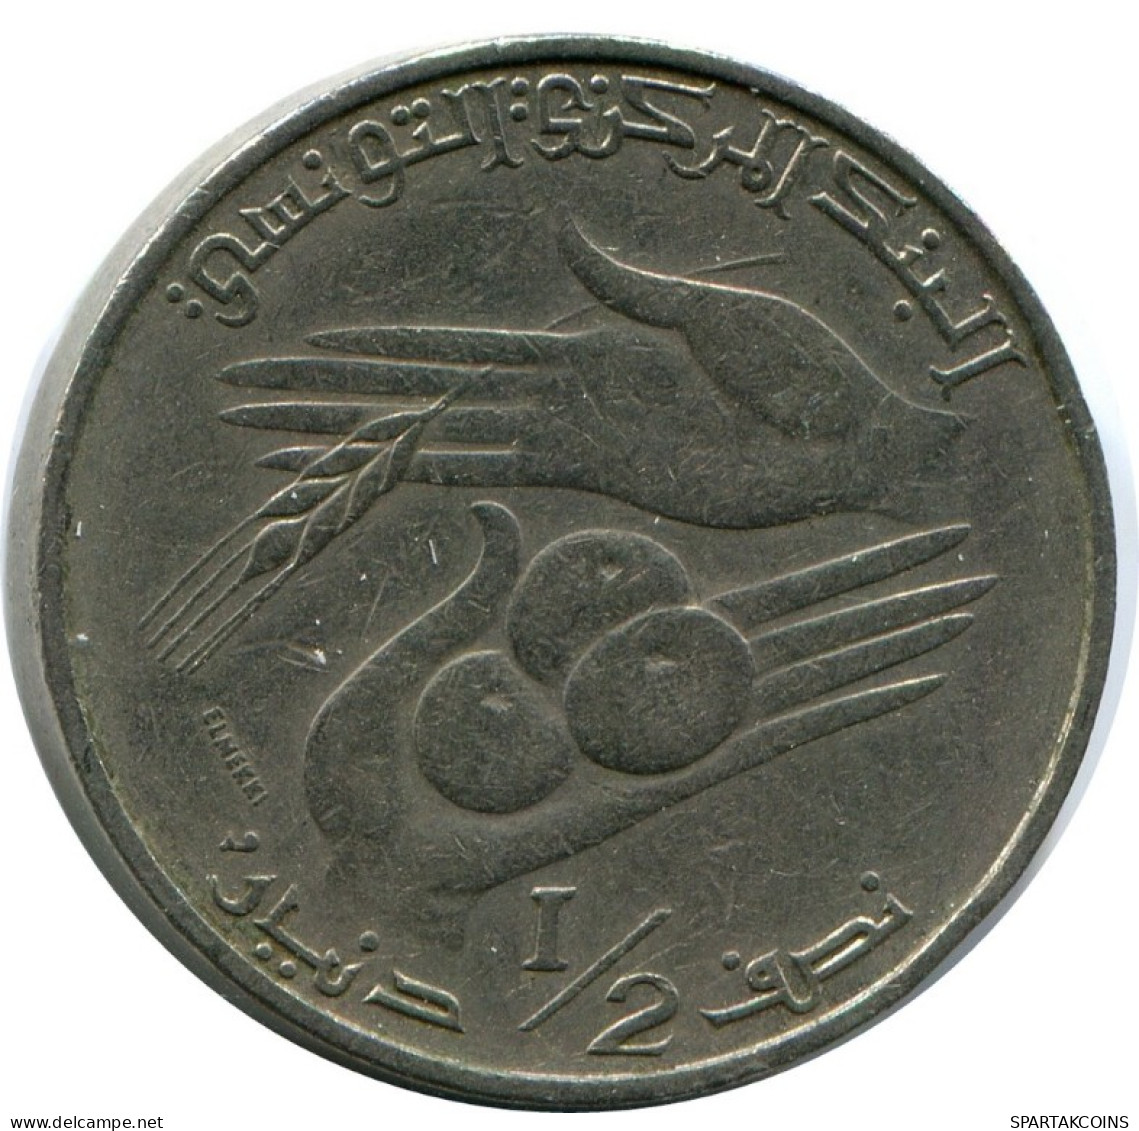 1/2 DINAR 1976 TUNISIA Coin FAO #AK163.U.A - Túnez